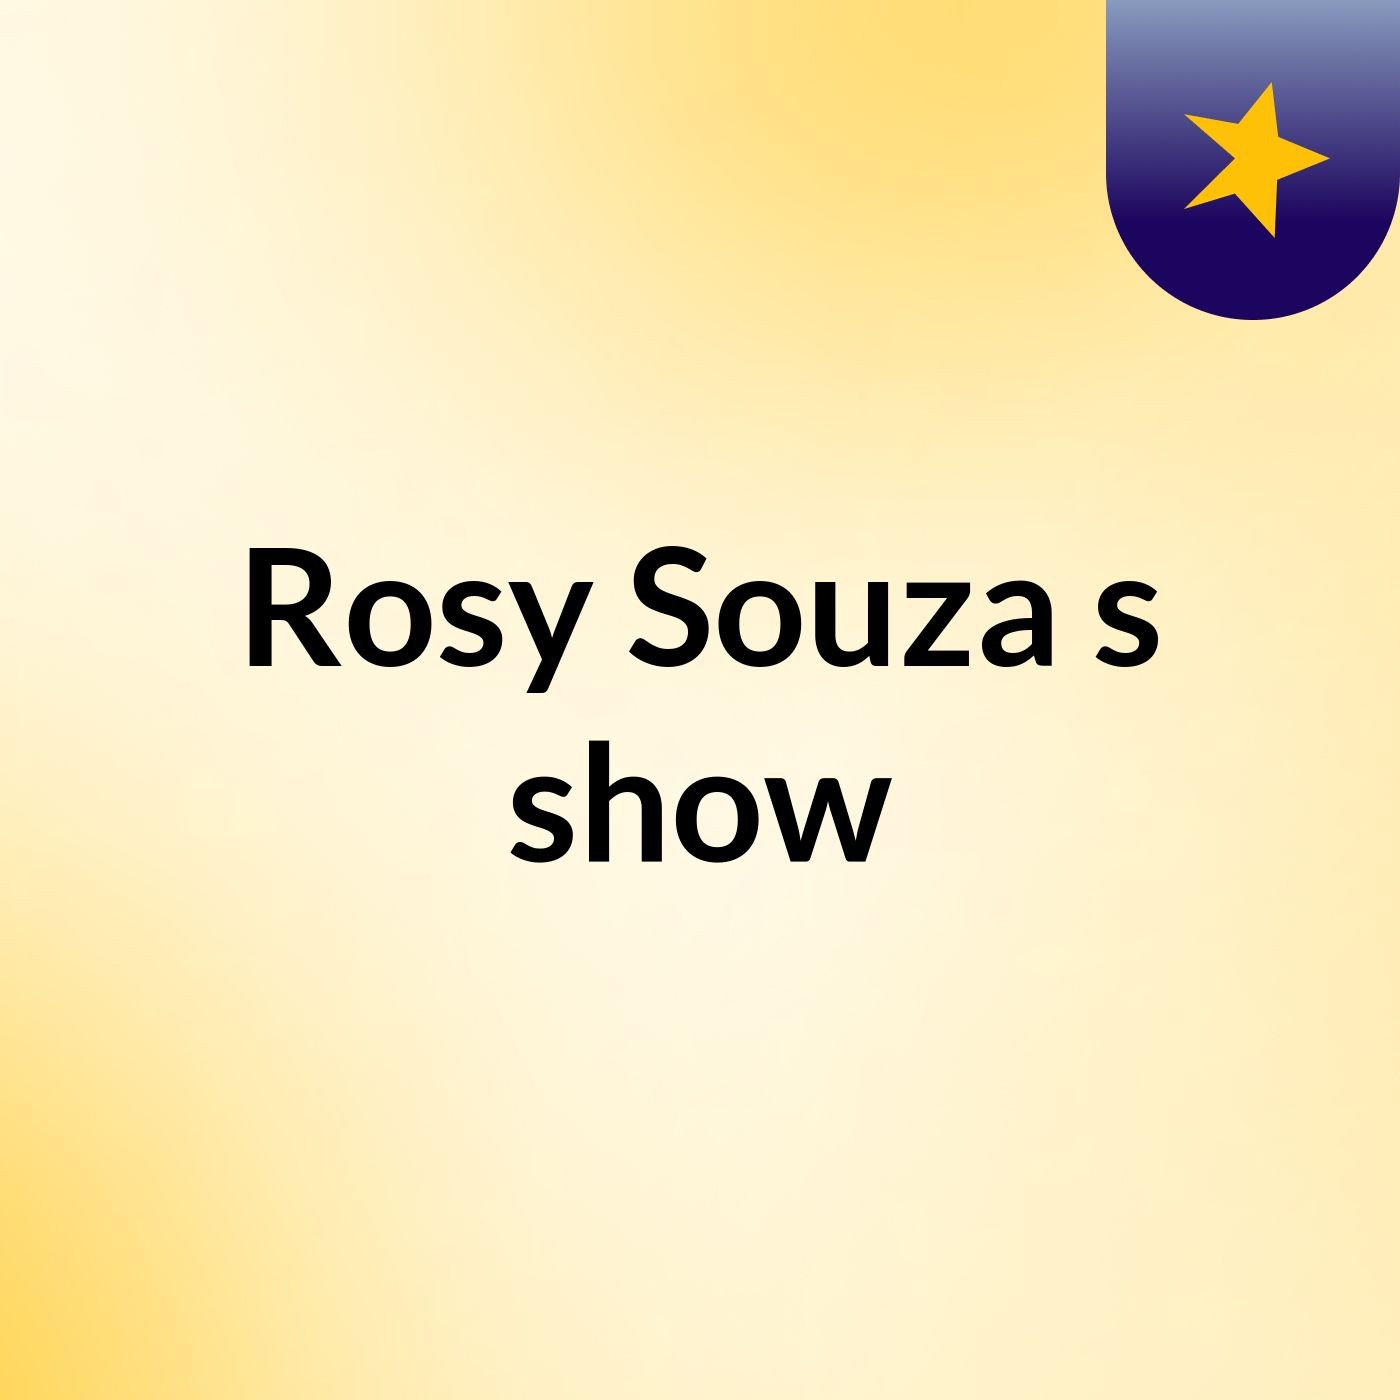 Rosy Souza's show